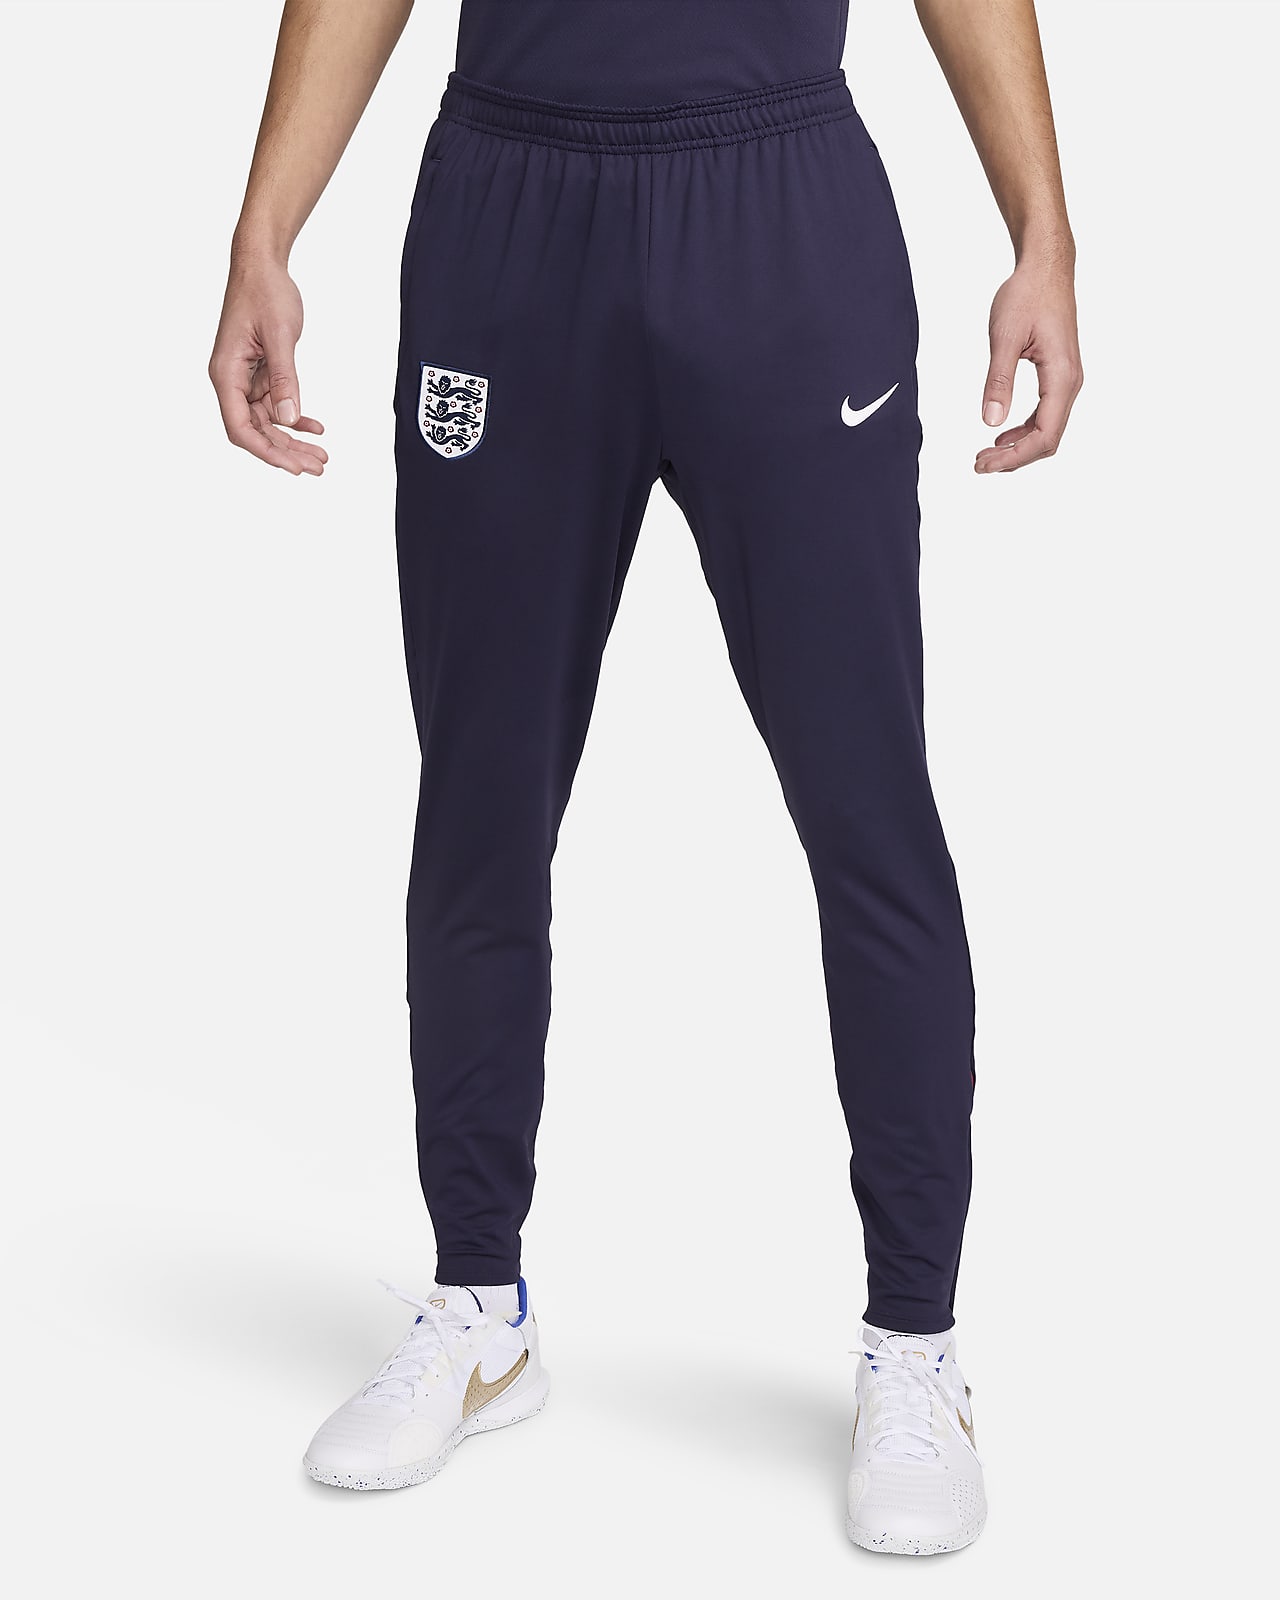 England Strike Nike Dri-FIT Strick-Fußballhose für Herren